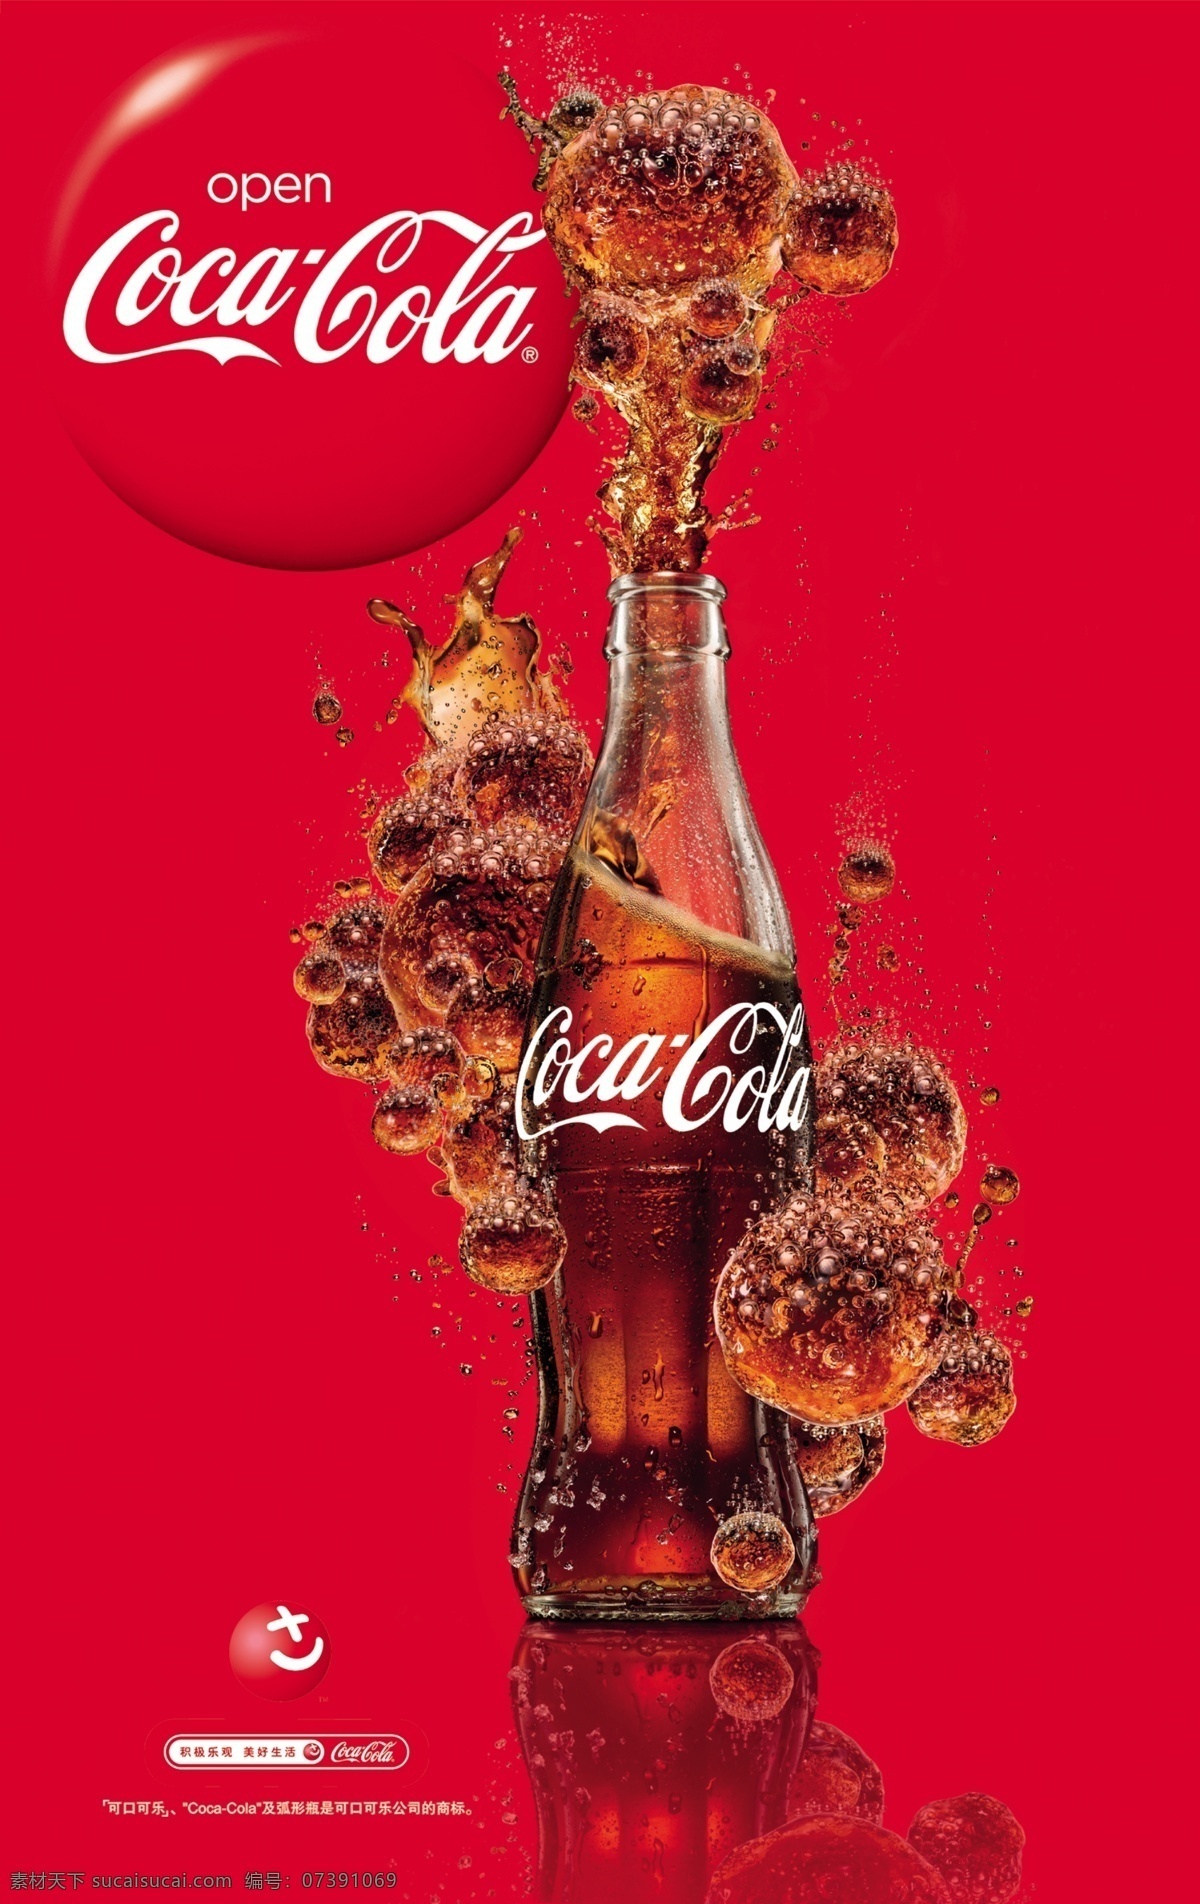 2010 年 可口可乐 新 元素 海报 公益标 玻璃瓶 餐饮 食杂 美食 冰爽气泡 快乐升腾 模板 分层 源文件